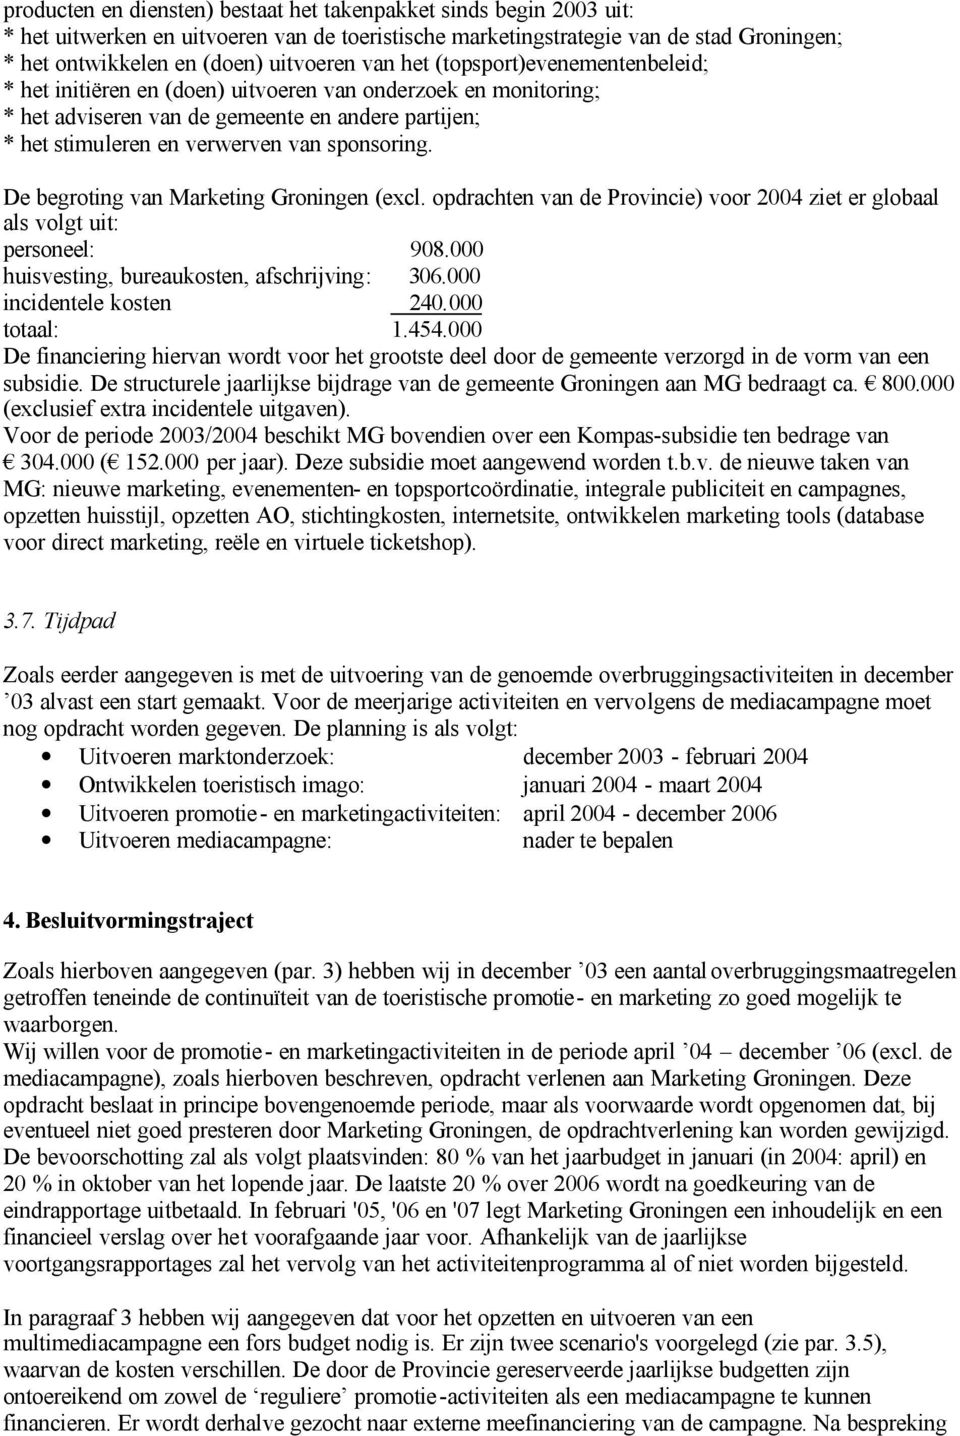 De begroting van Marketing Groningen (excl. opdrachten van de Provincie) voor 2004 ziet er globaal als volgt uit: personeel: 908.000 huisvesting, bureaukosten, afschrijving: 306.